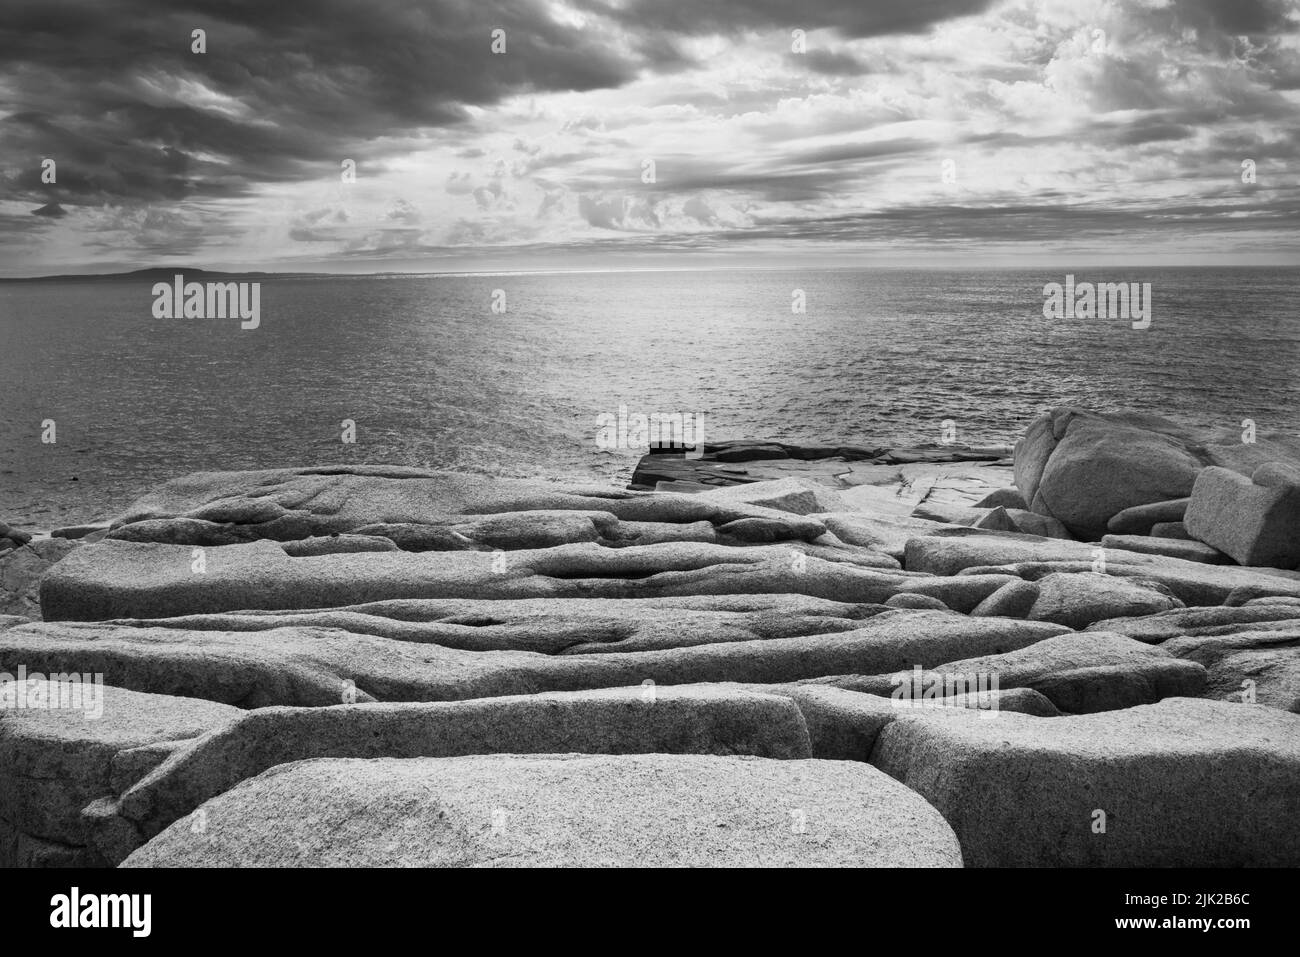 Una artística fotografía en B&W de las rocas de granito erosionadas mirando hacia el amanecer en el Océano Atlántico a lo largo de la costa del Parque Nacional Acadia, Mount Foto de stock